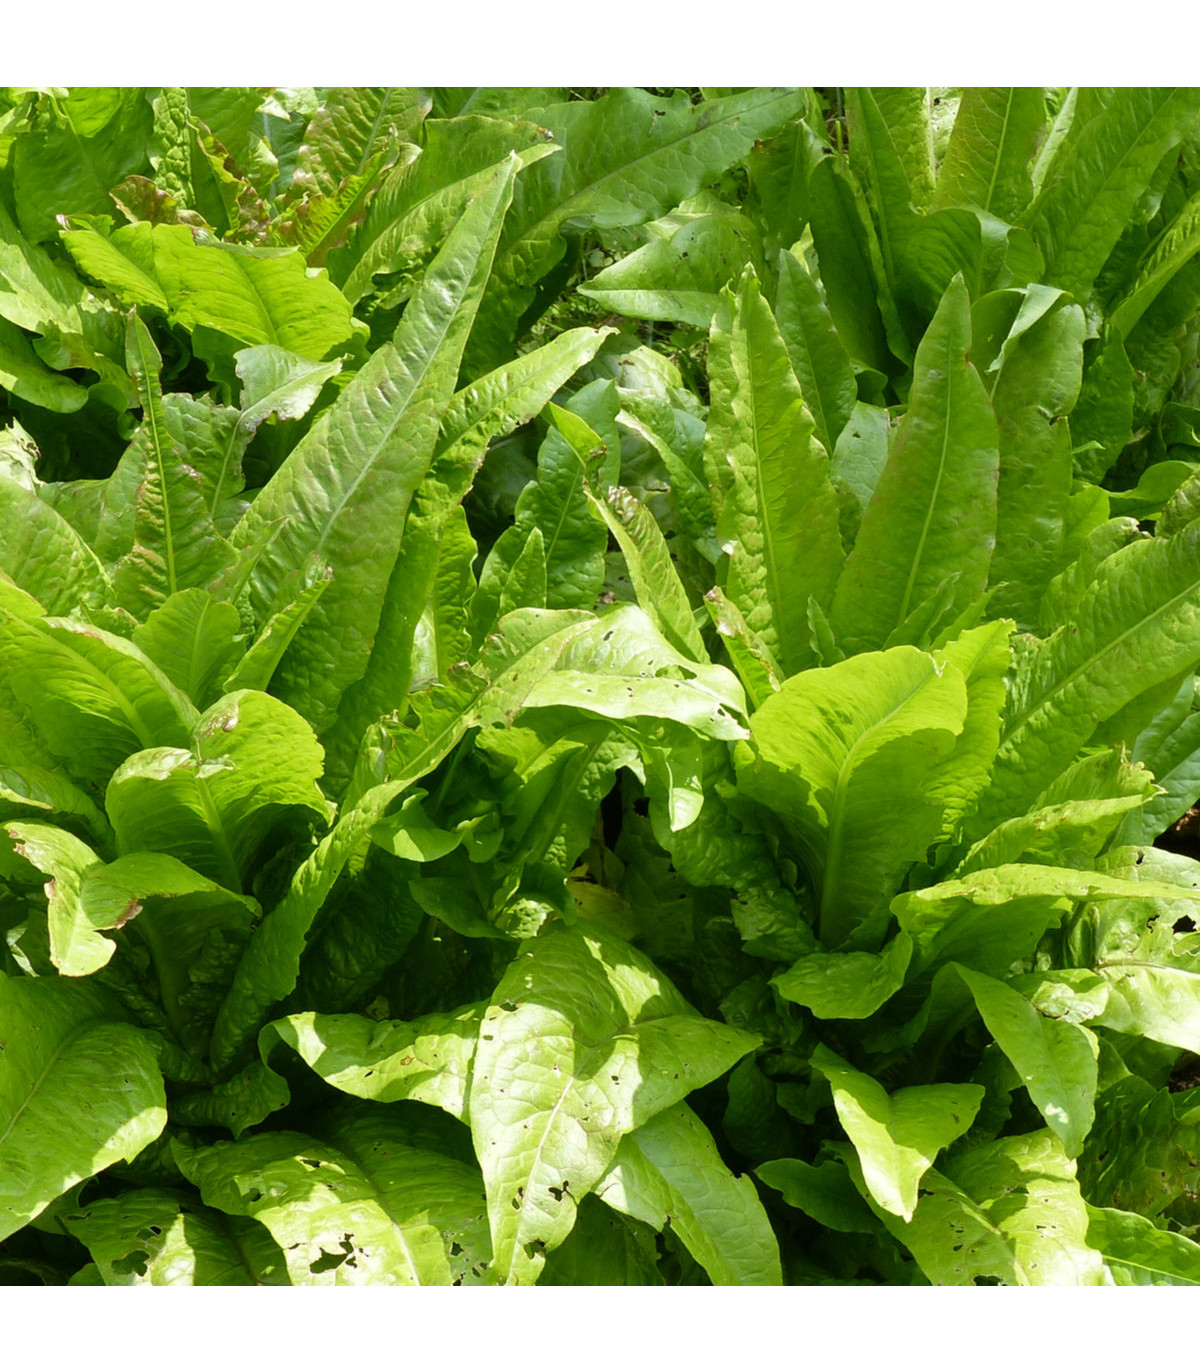 Salát chřestový Celtuce - Lactuca sativa L.var.asparagina - osivo chřestového salátu - 300 ks